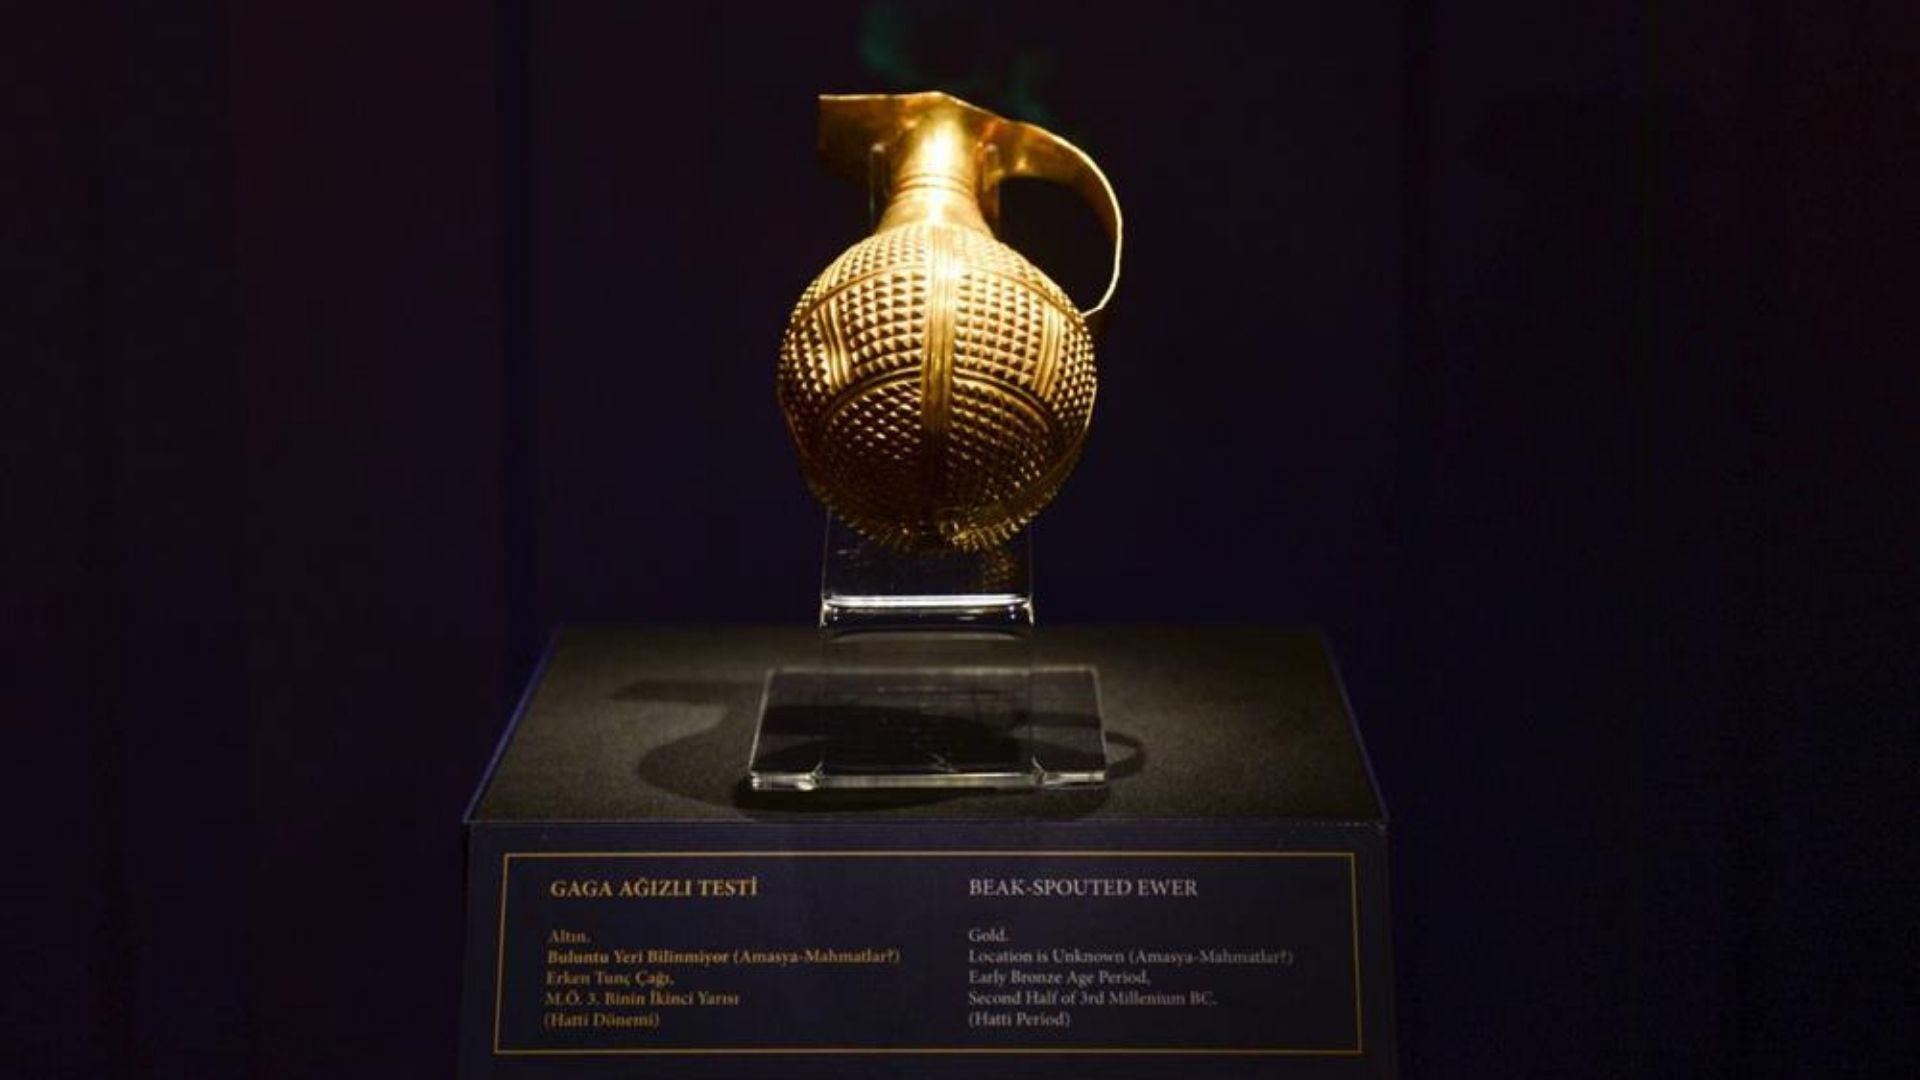 4500 yıllık hattaşilere ait altın gaga ağızlı testi